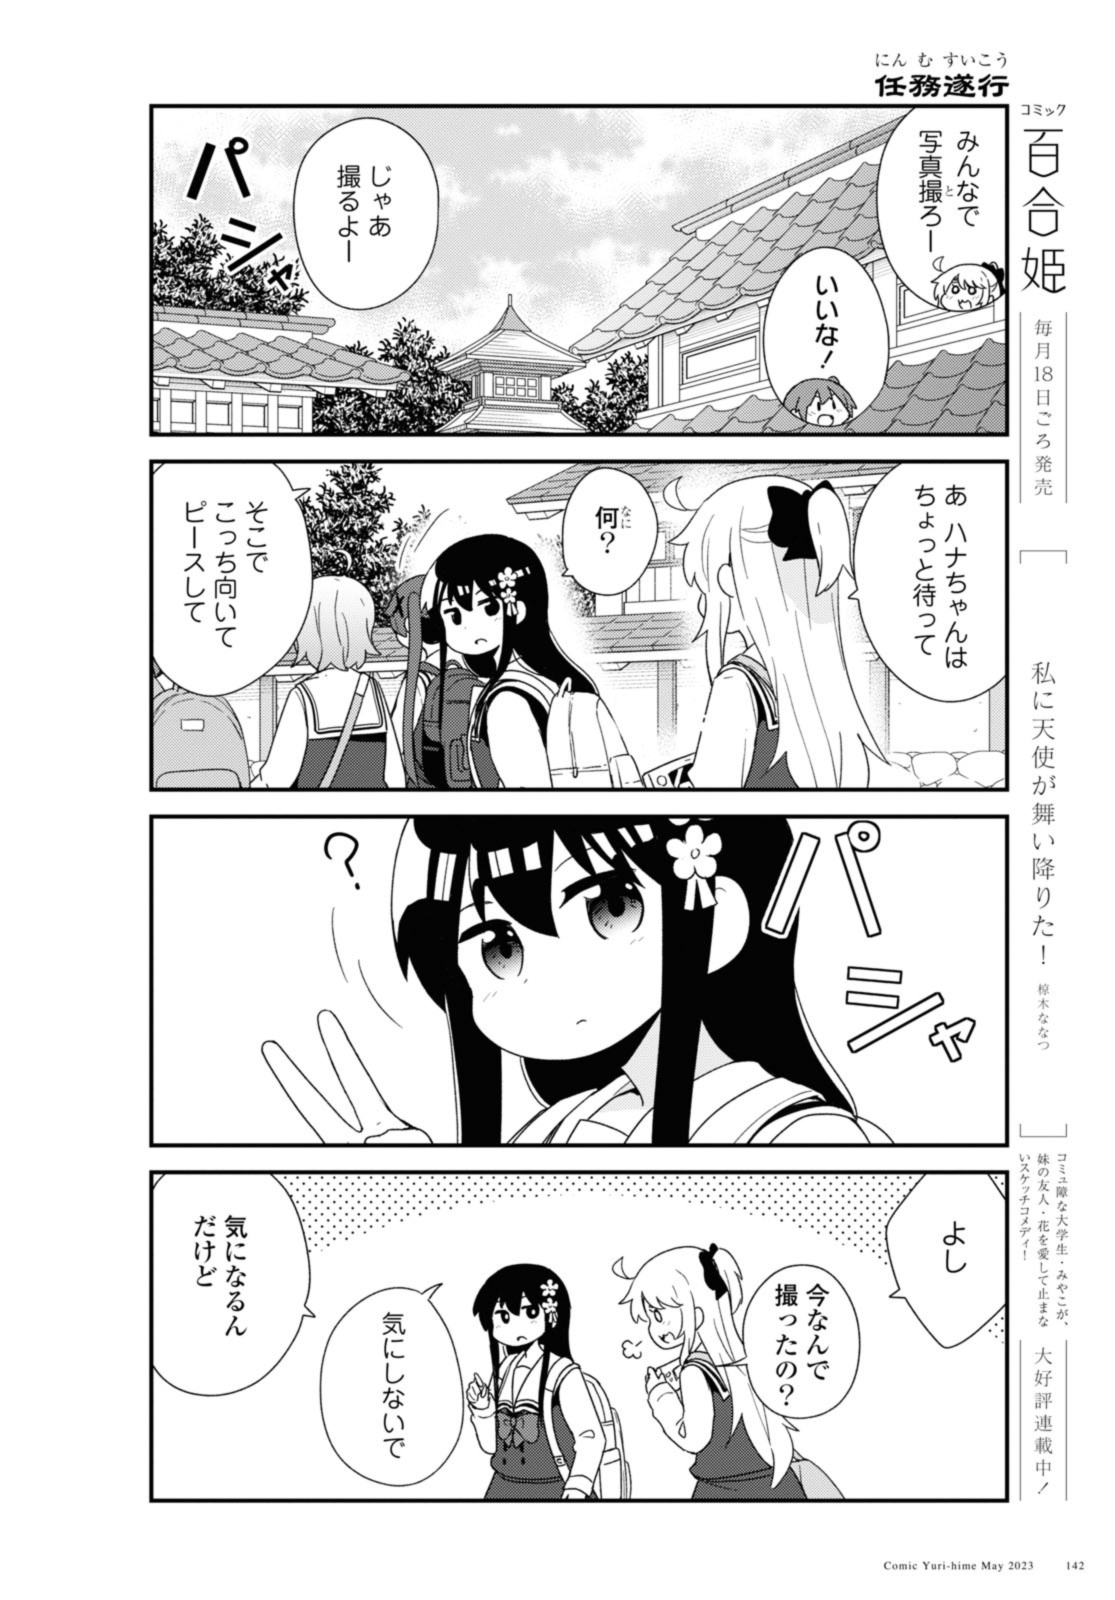 Watashi ni Tenshi ga Maiorita! - Chapter 105 - Page 4